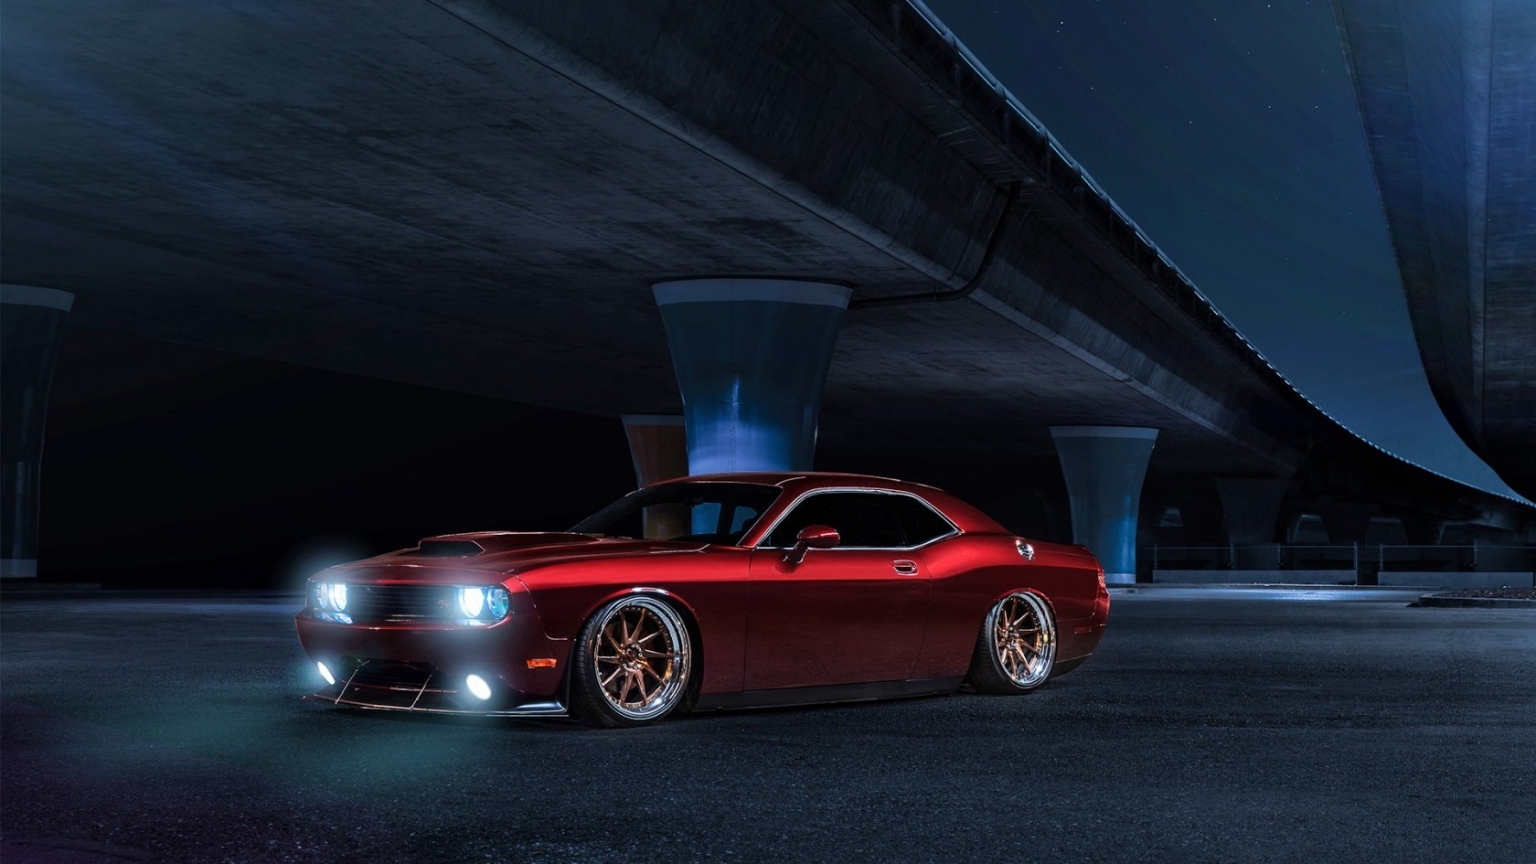 Red Dodge Challenger Avant Garde for 1536 x 864 HDTV resolution